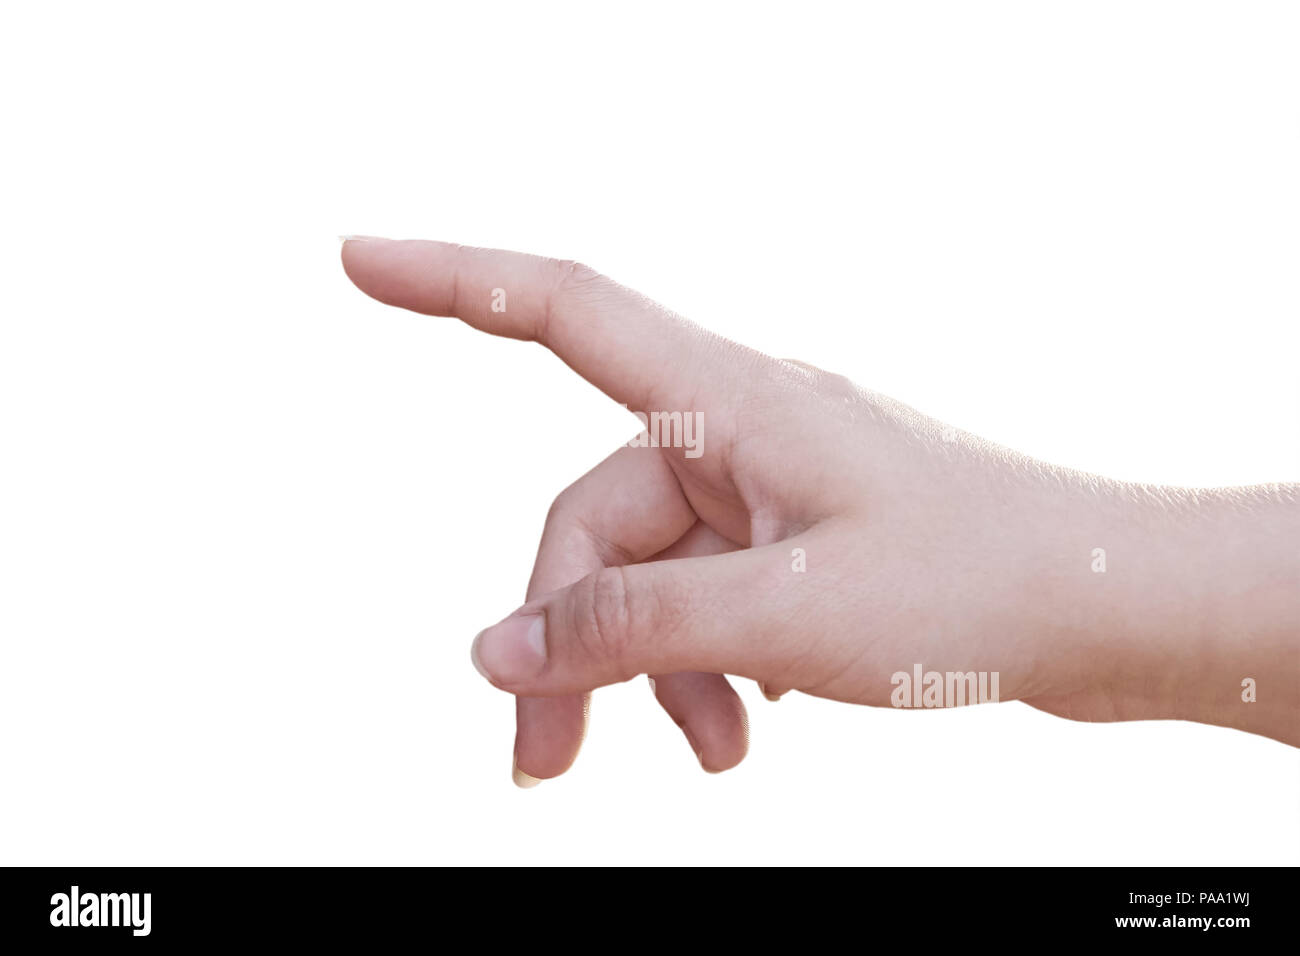 Femmina di mano con il dito puntato o toccando - isolato su sfondo bianco Foto Stock